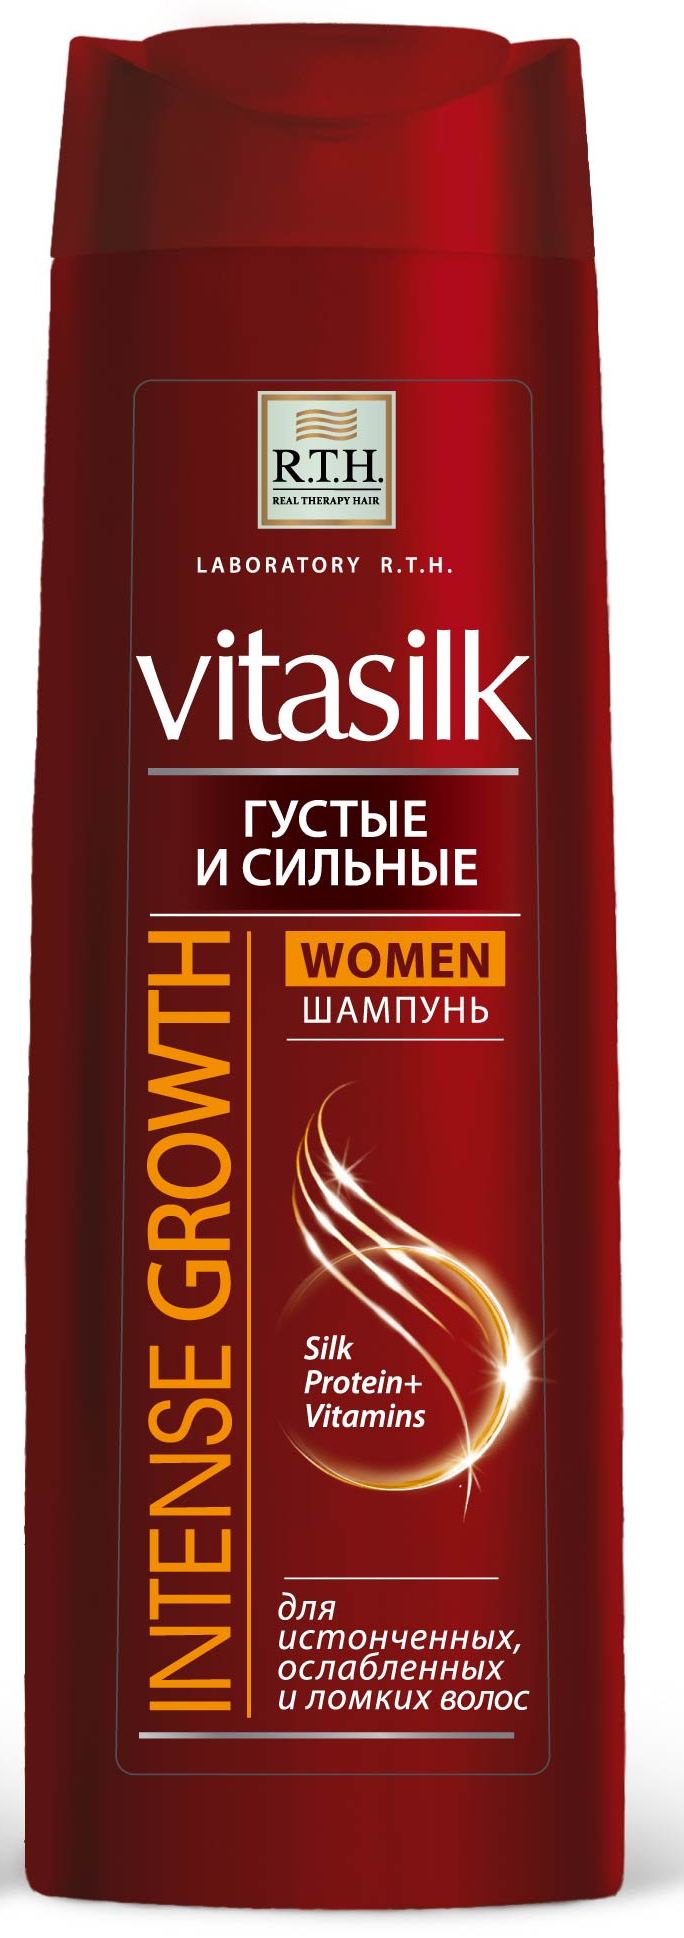 Шампунь для волос R.T.H. Vitasilk WOMEN Густые и сильные